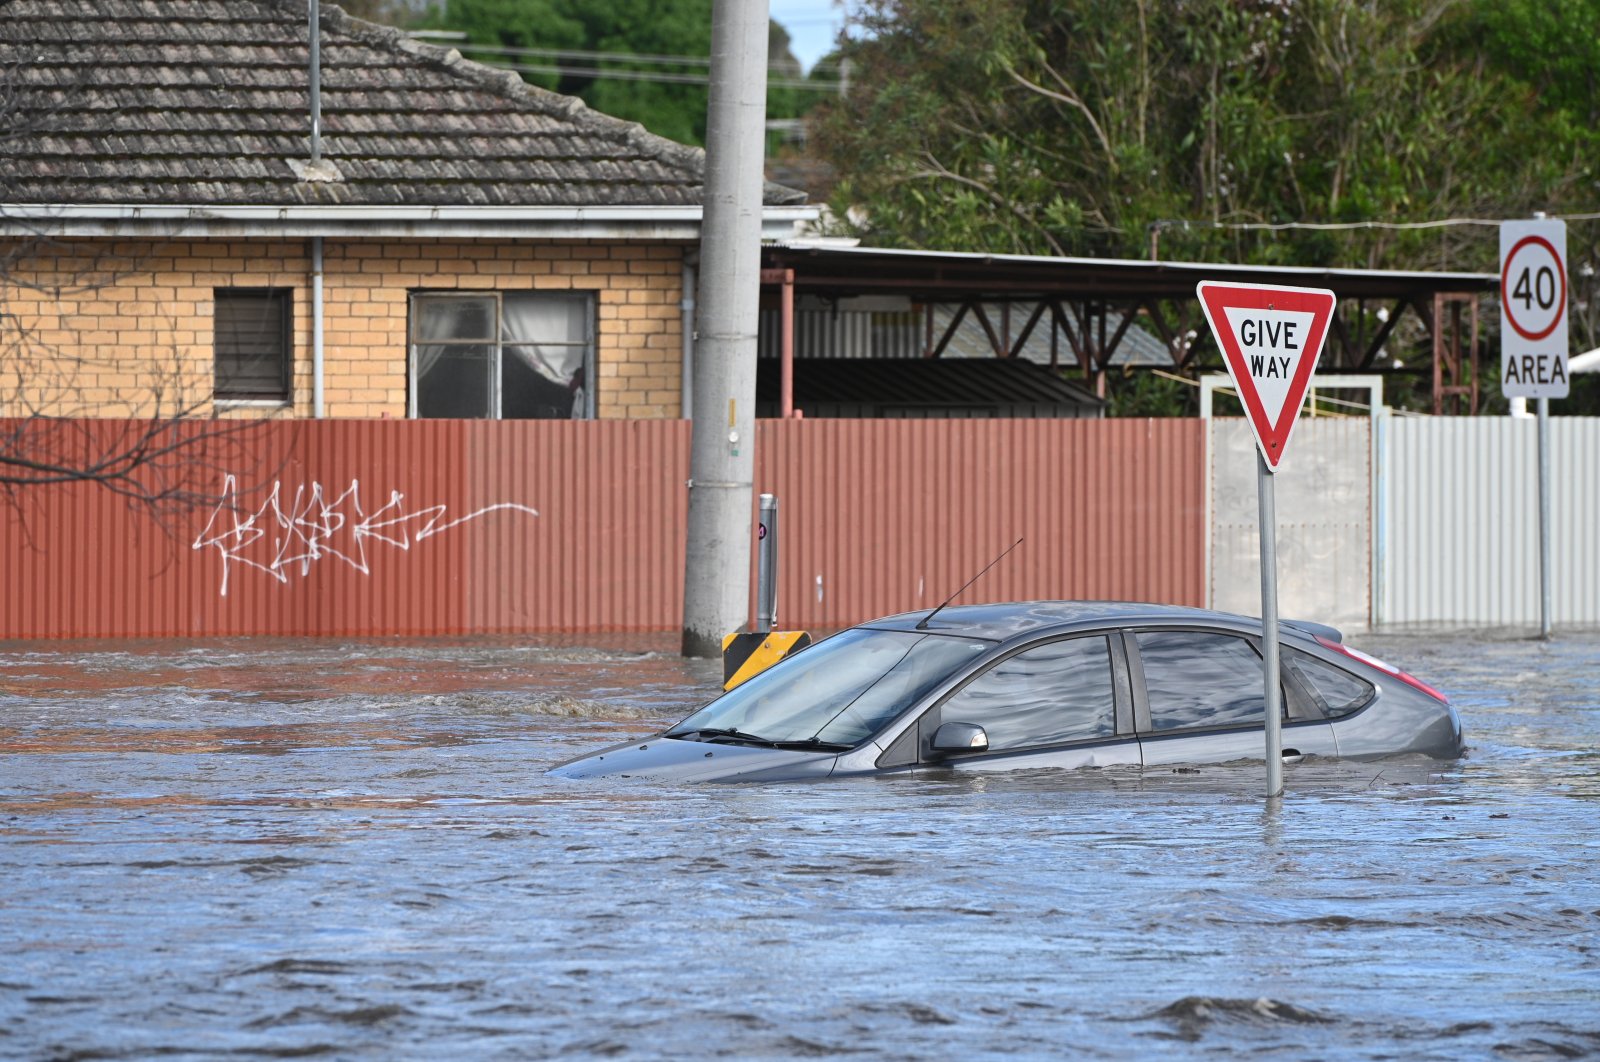 Banjir menelan mobil, menutupi rumah dalam keadaan darurat besar Australia